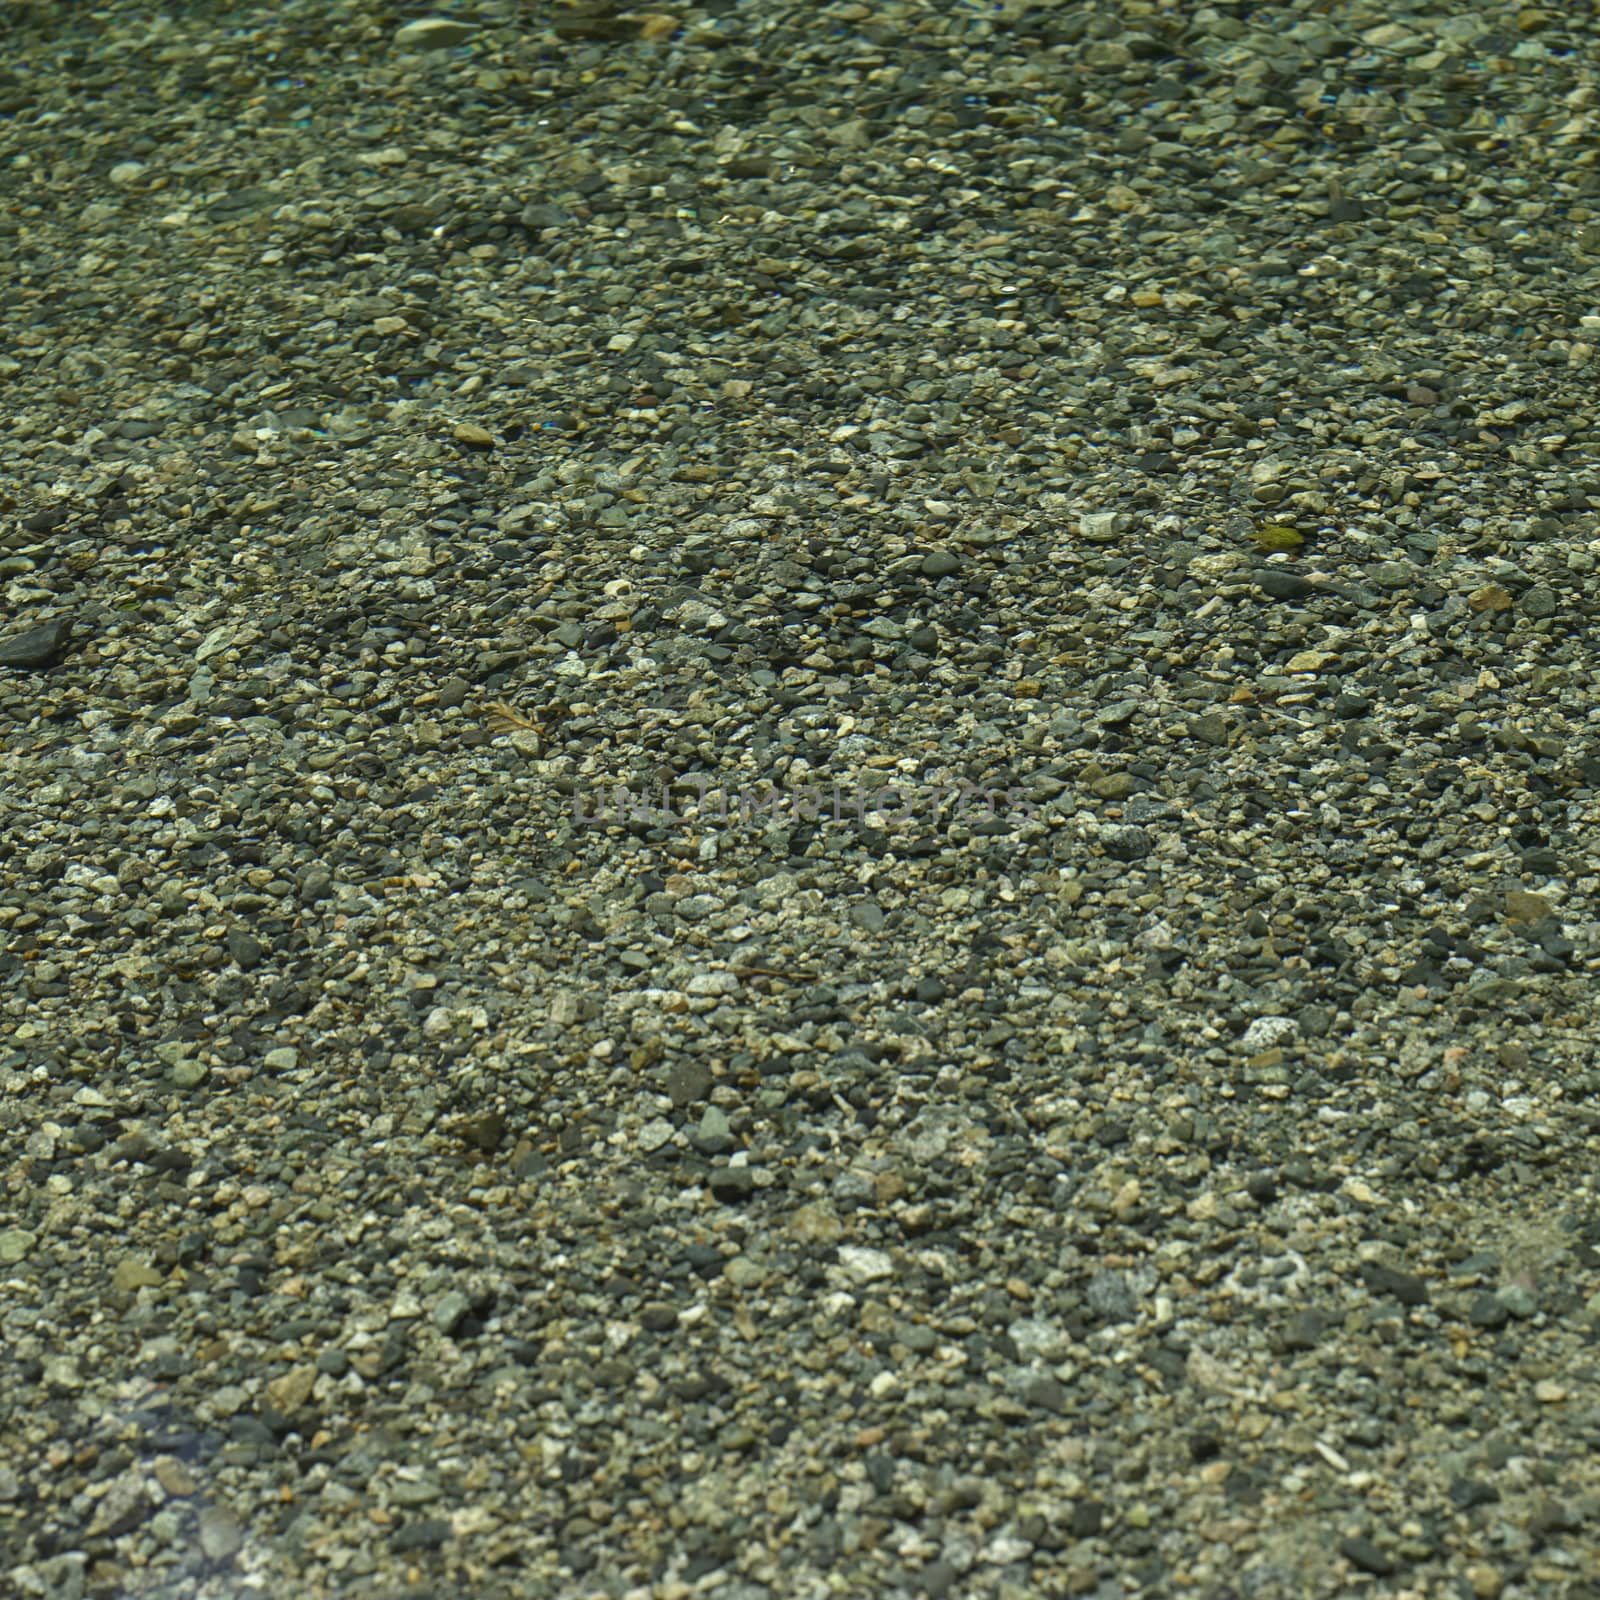 Rocks under clear water by mmm